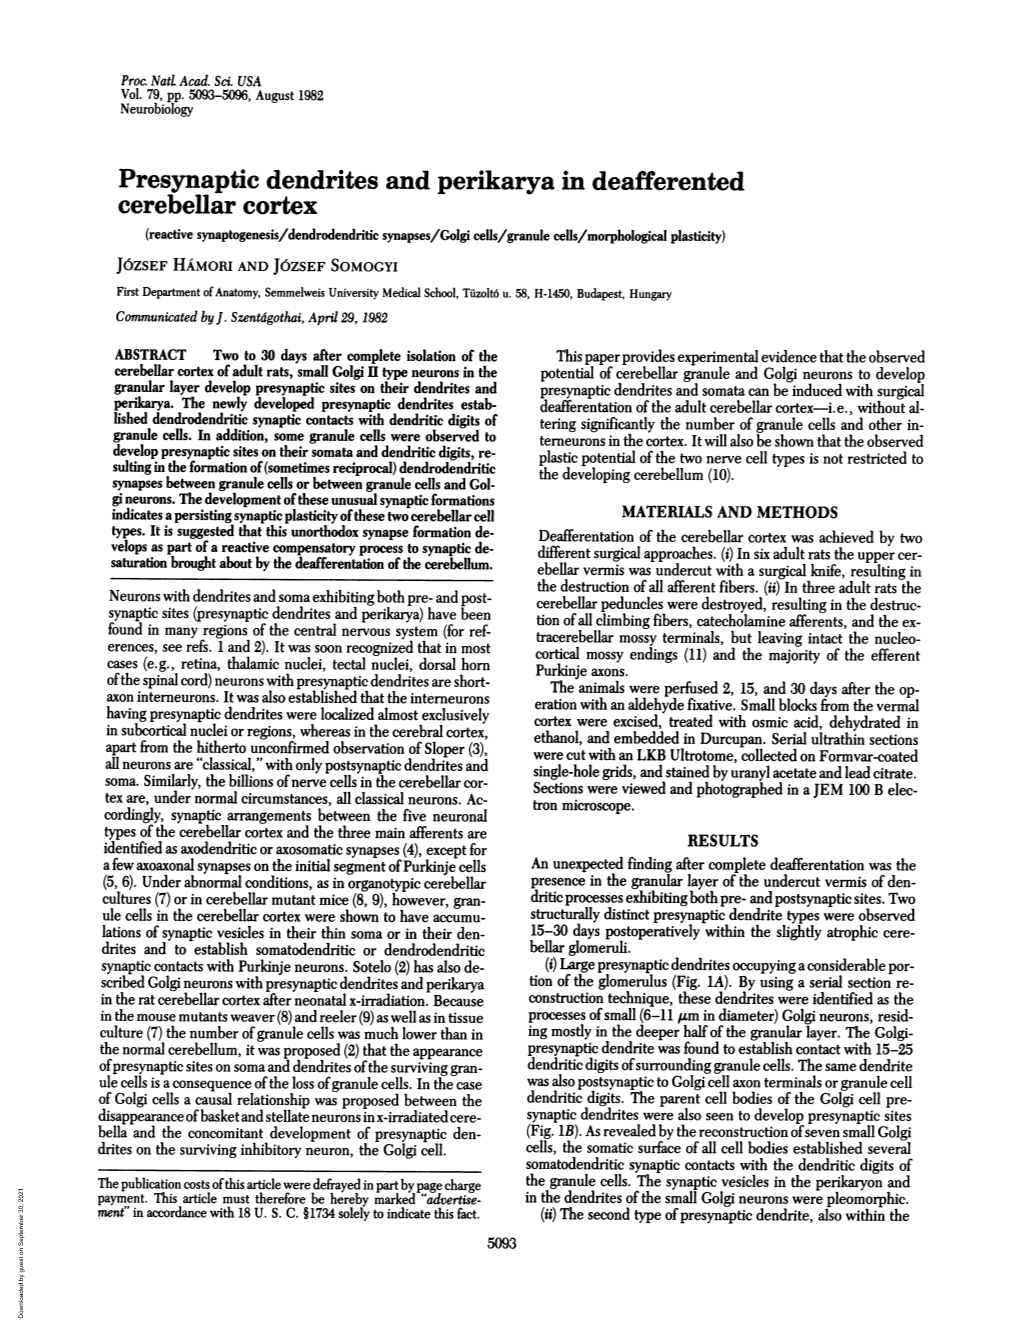 Presynaptic Dendrites and Perikarya in Deafferented Cerebellar